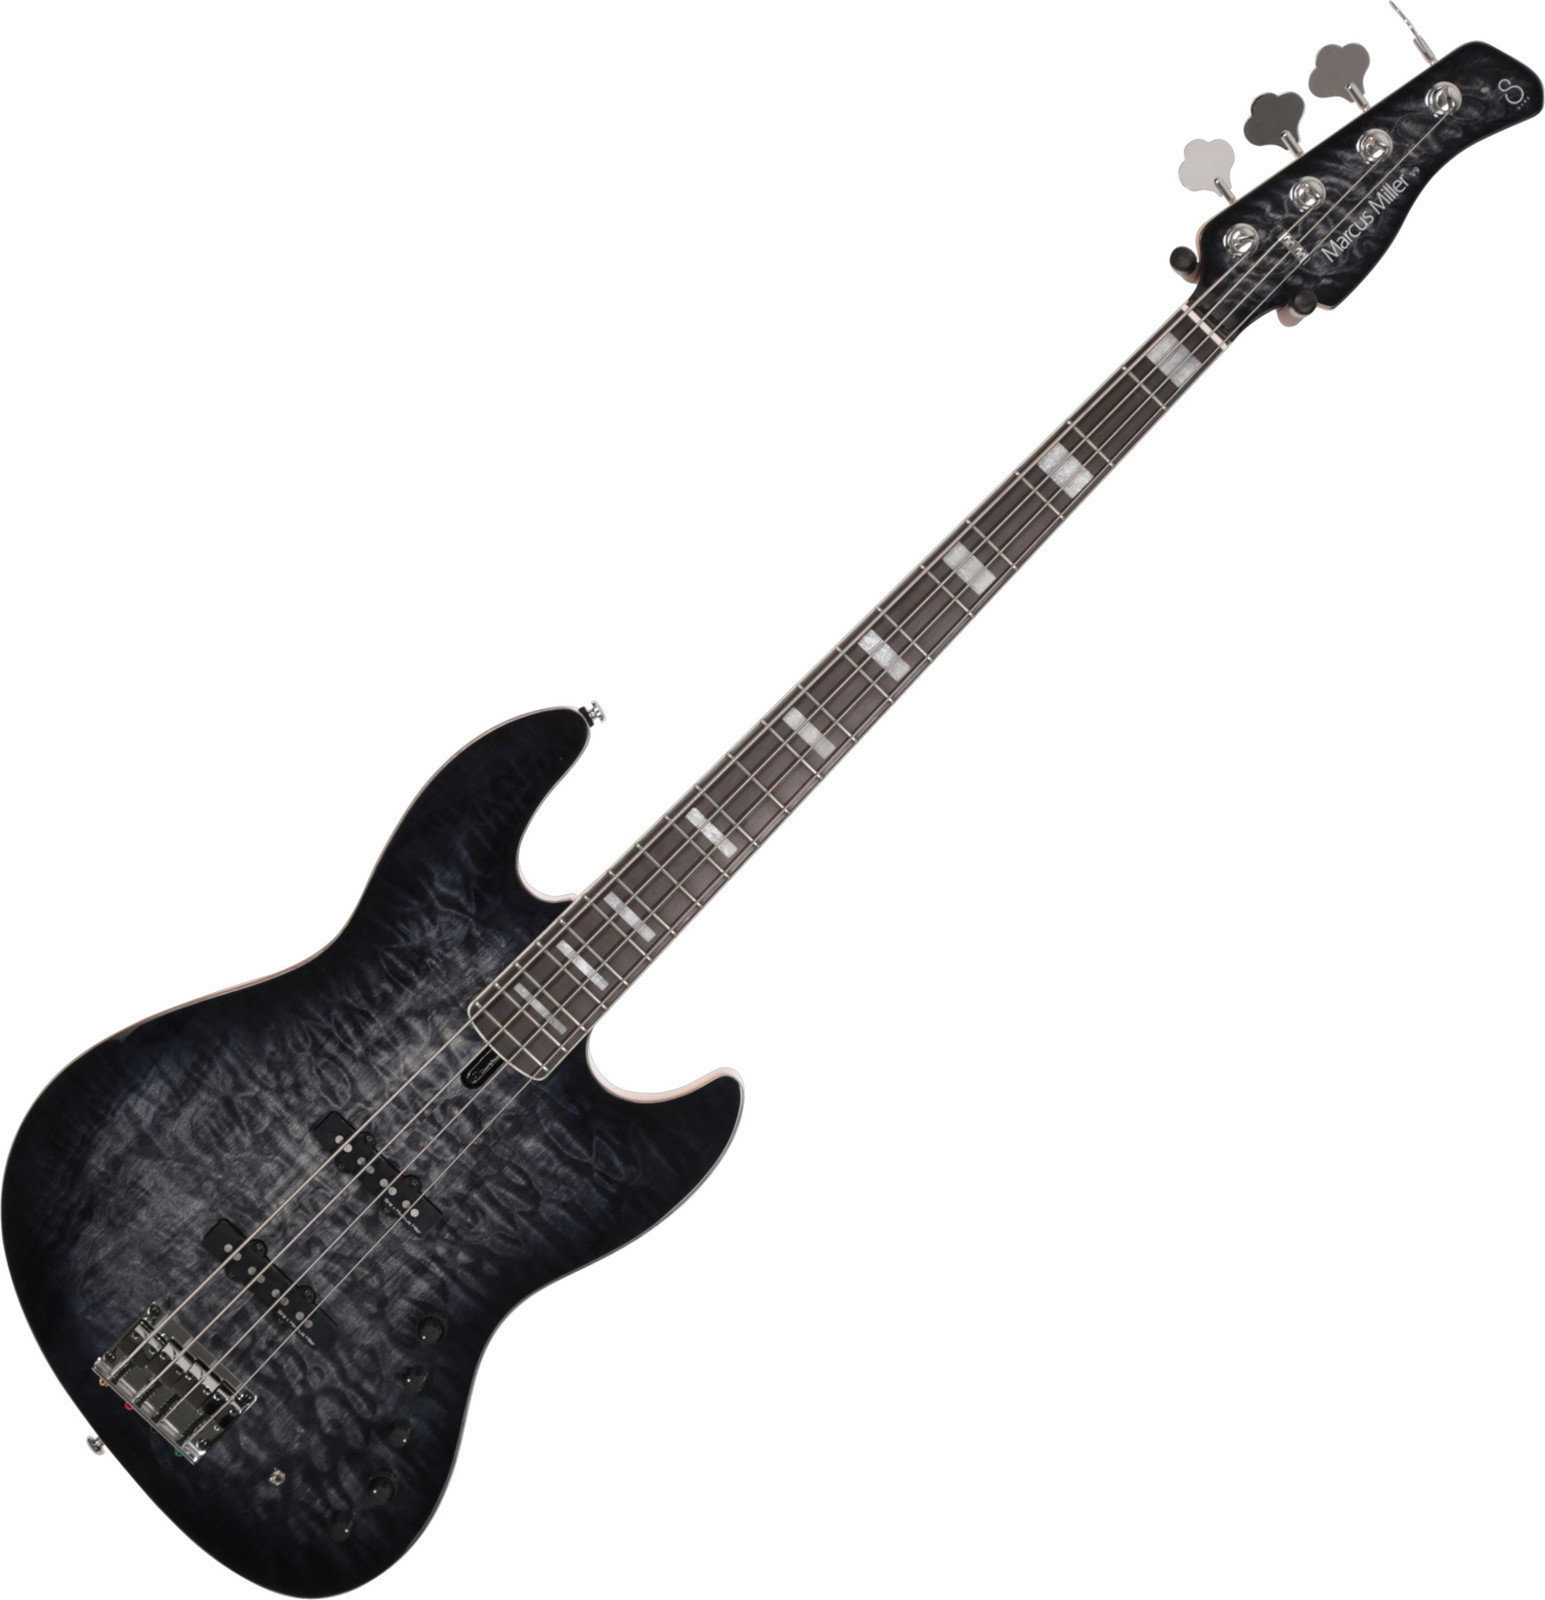 Električna bas kitara Sire Marcus Miller V9 Swamp-4 Ash 2nd Gen Transparent Black